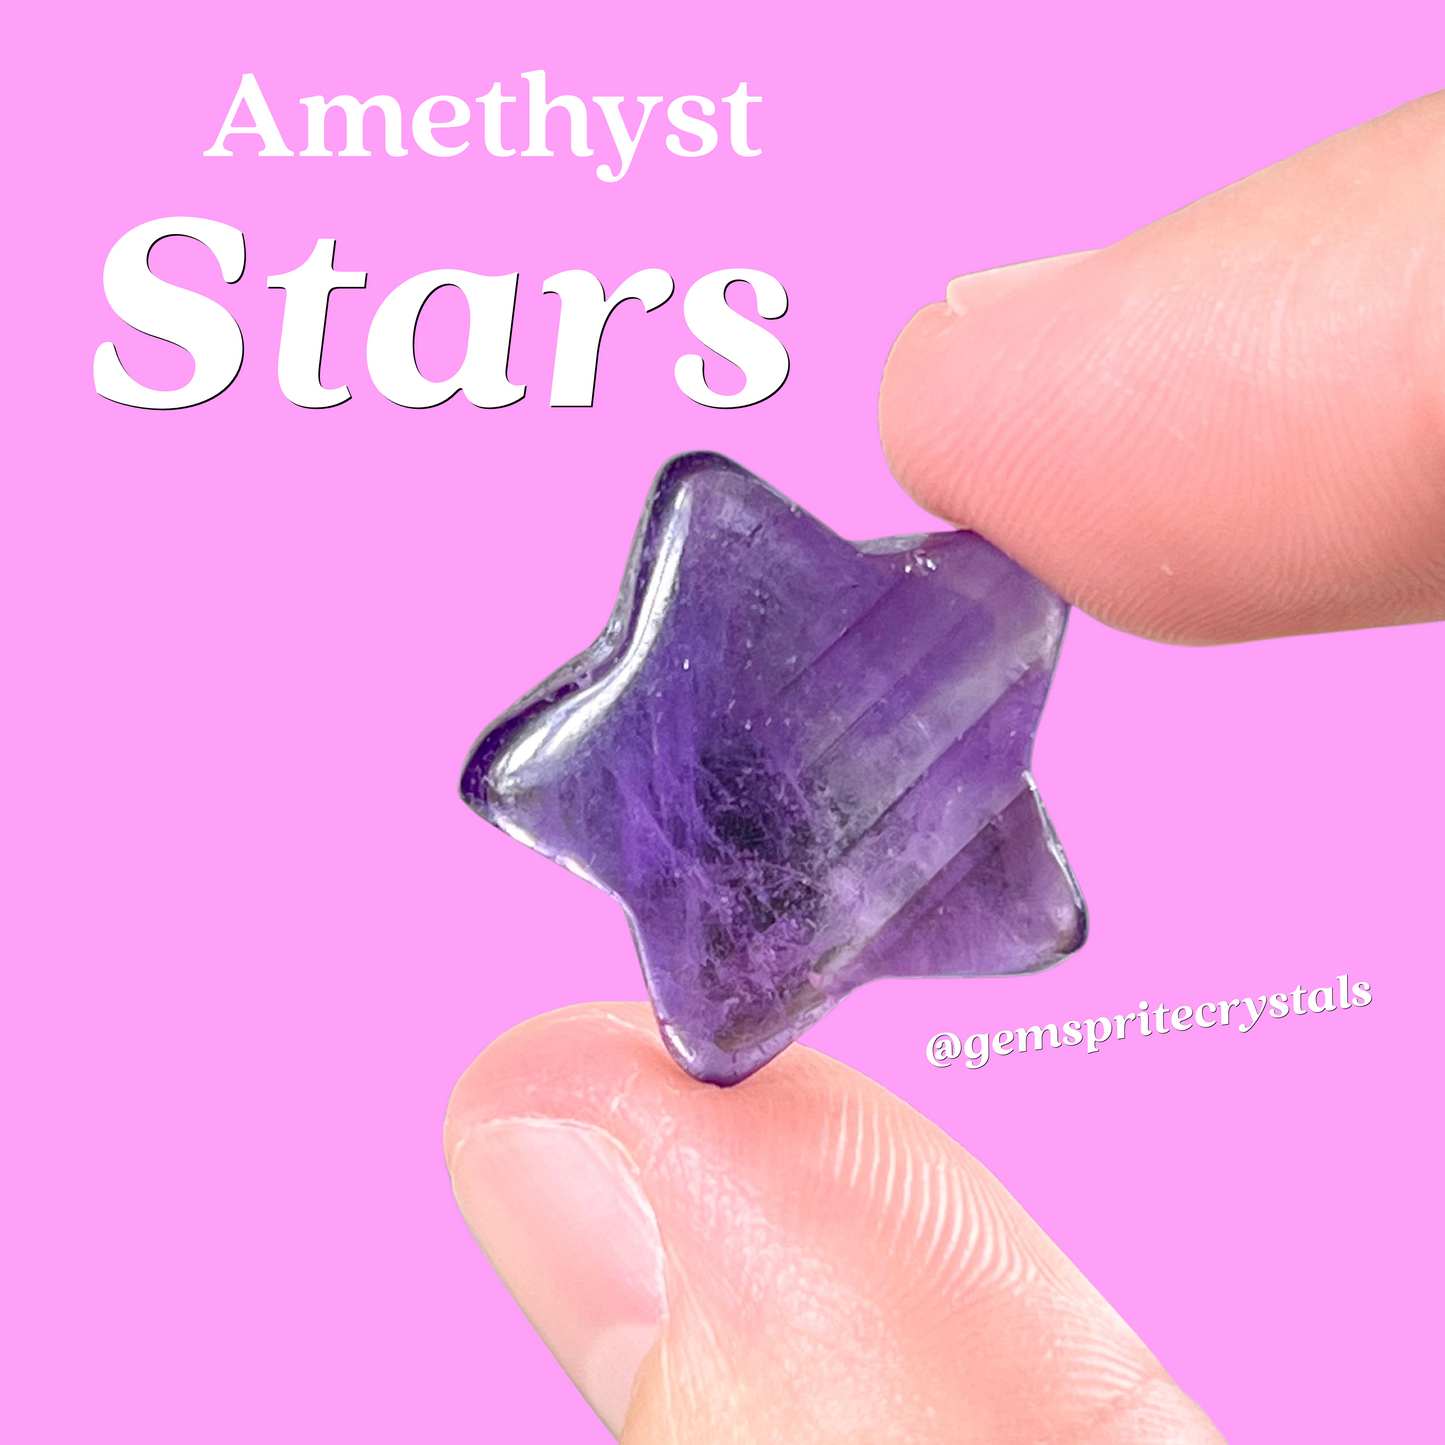 Amethyst Stars